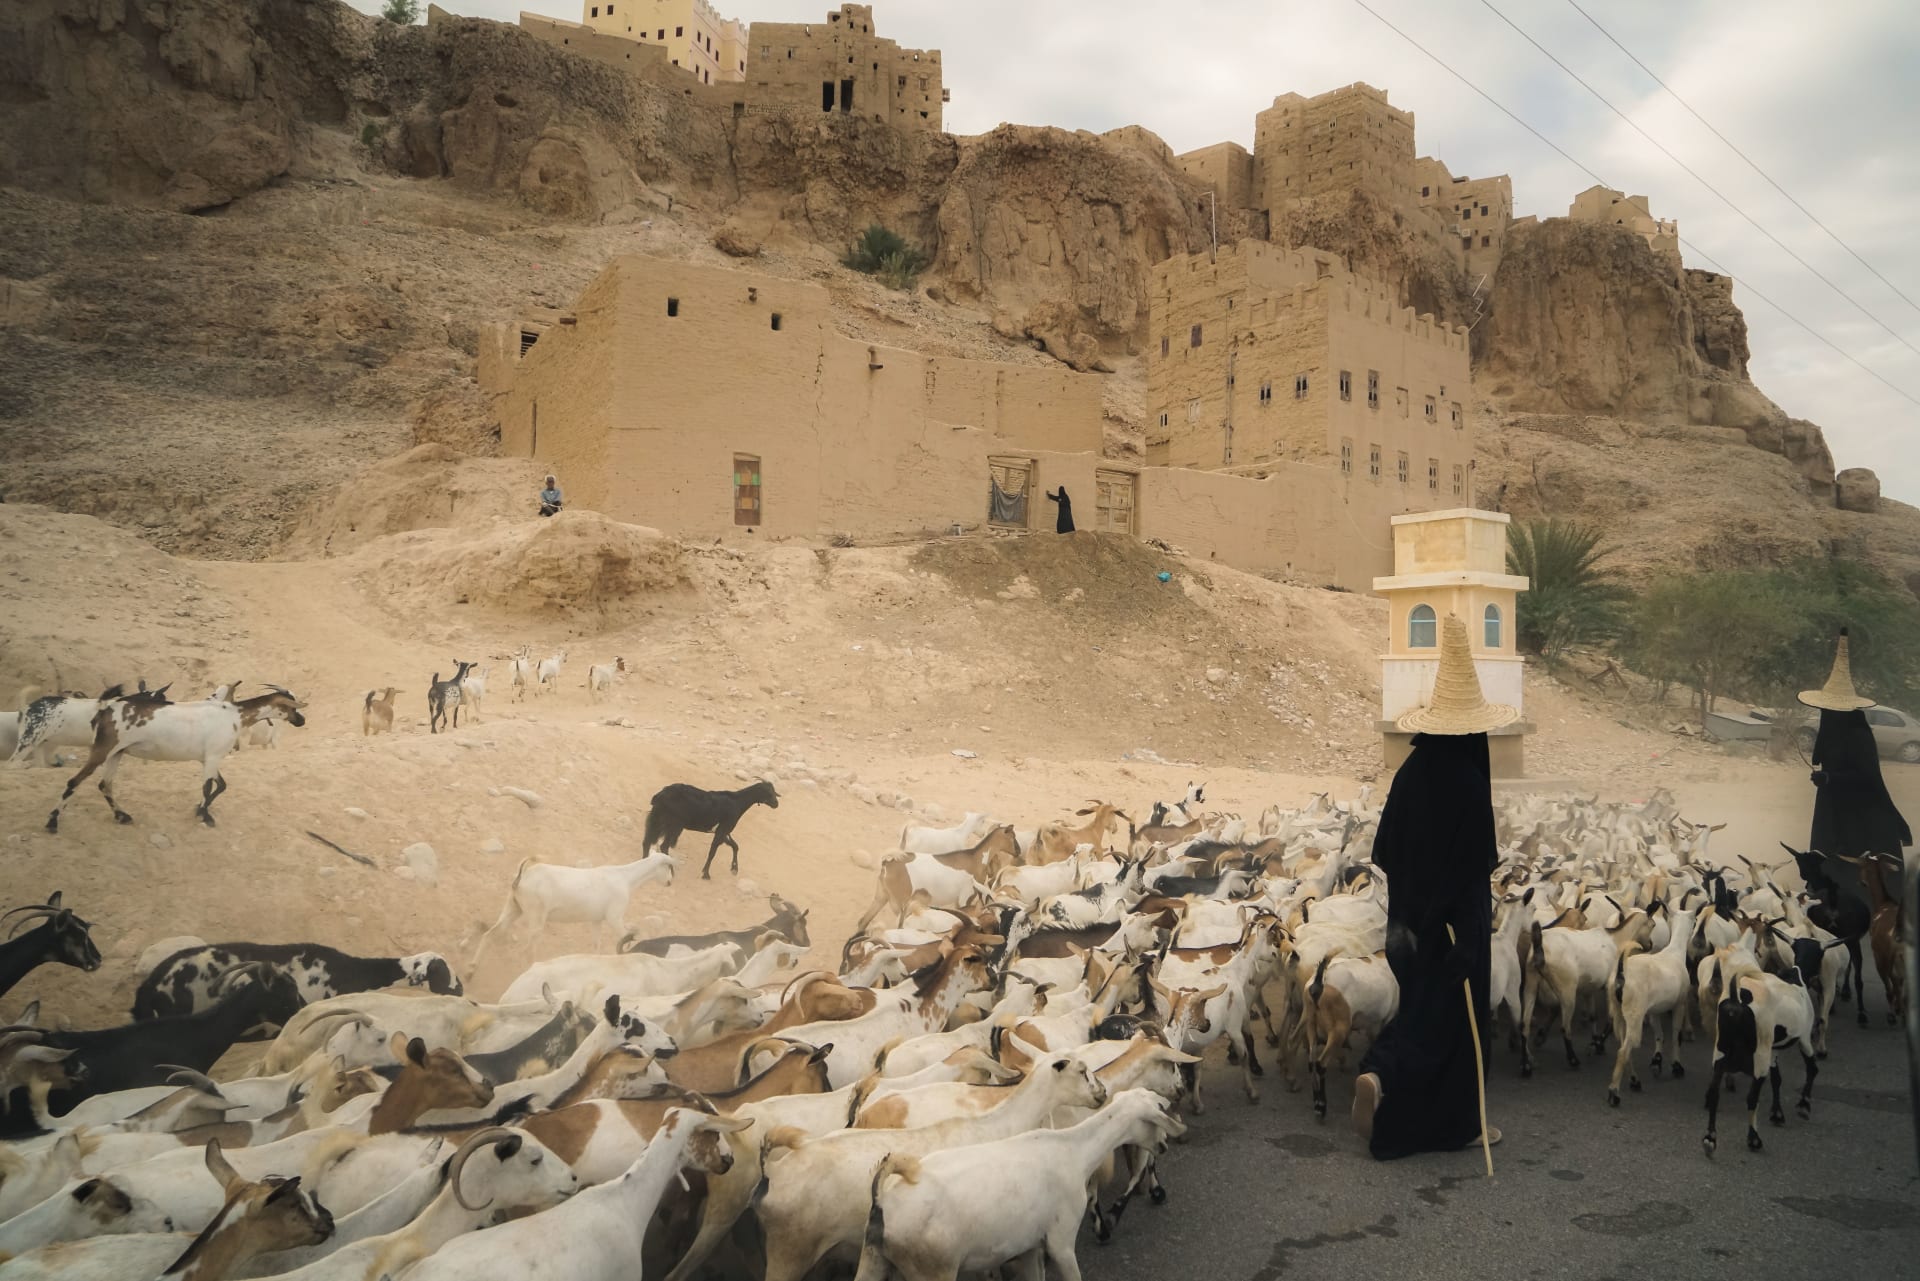 أبراج منبثقة من الصخور.. استكشف سحر "مانهاتن الصحراء" في اليمن